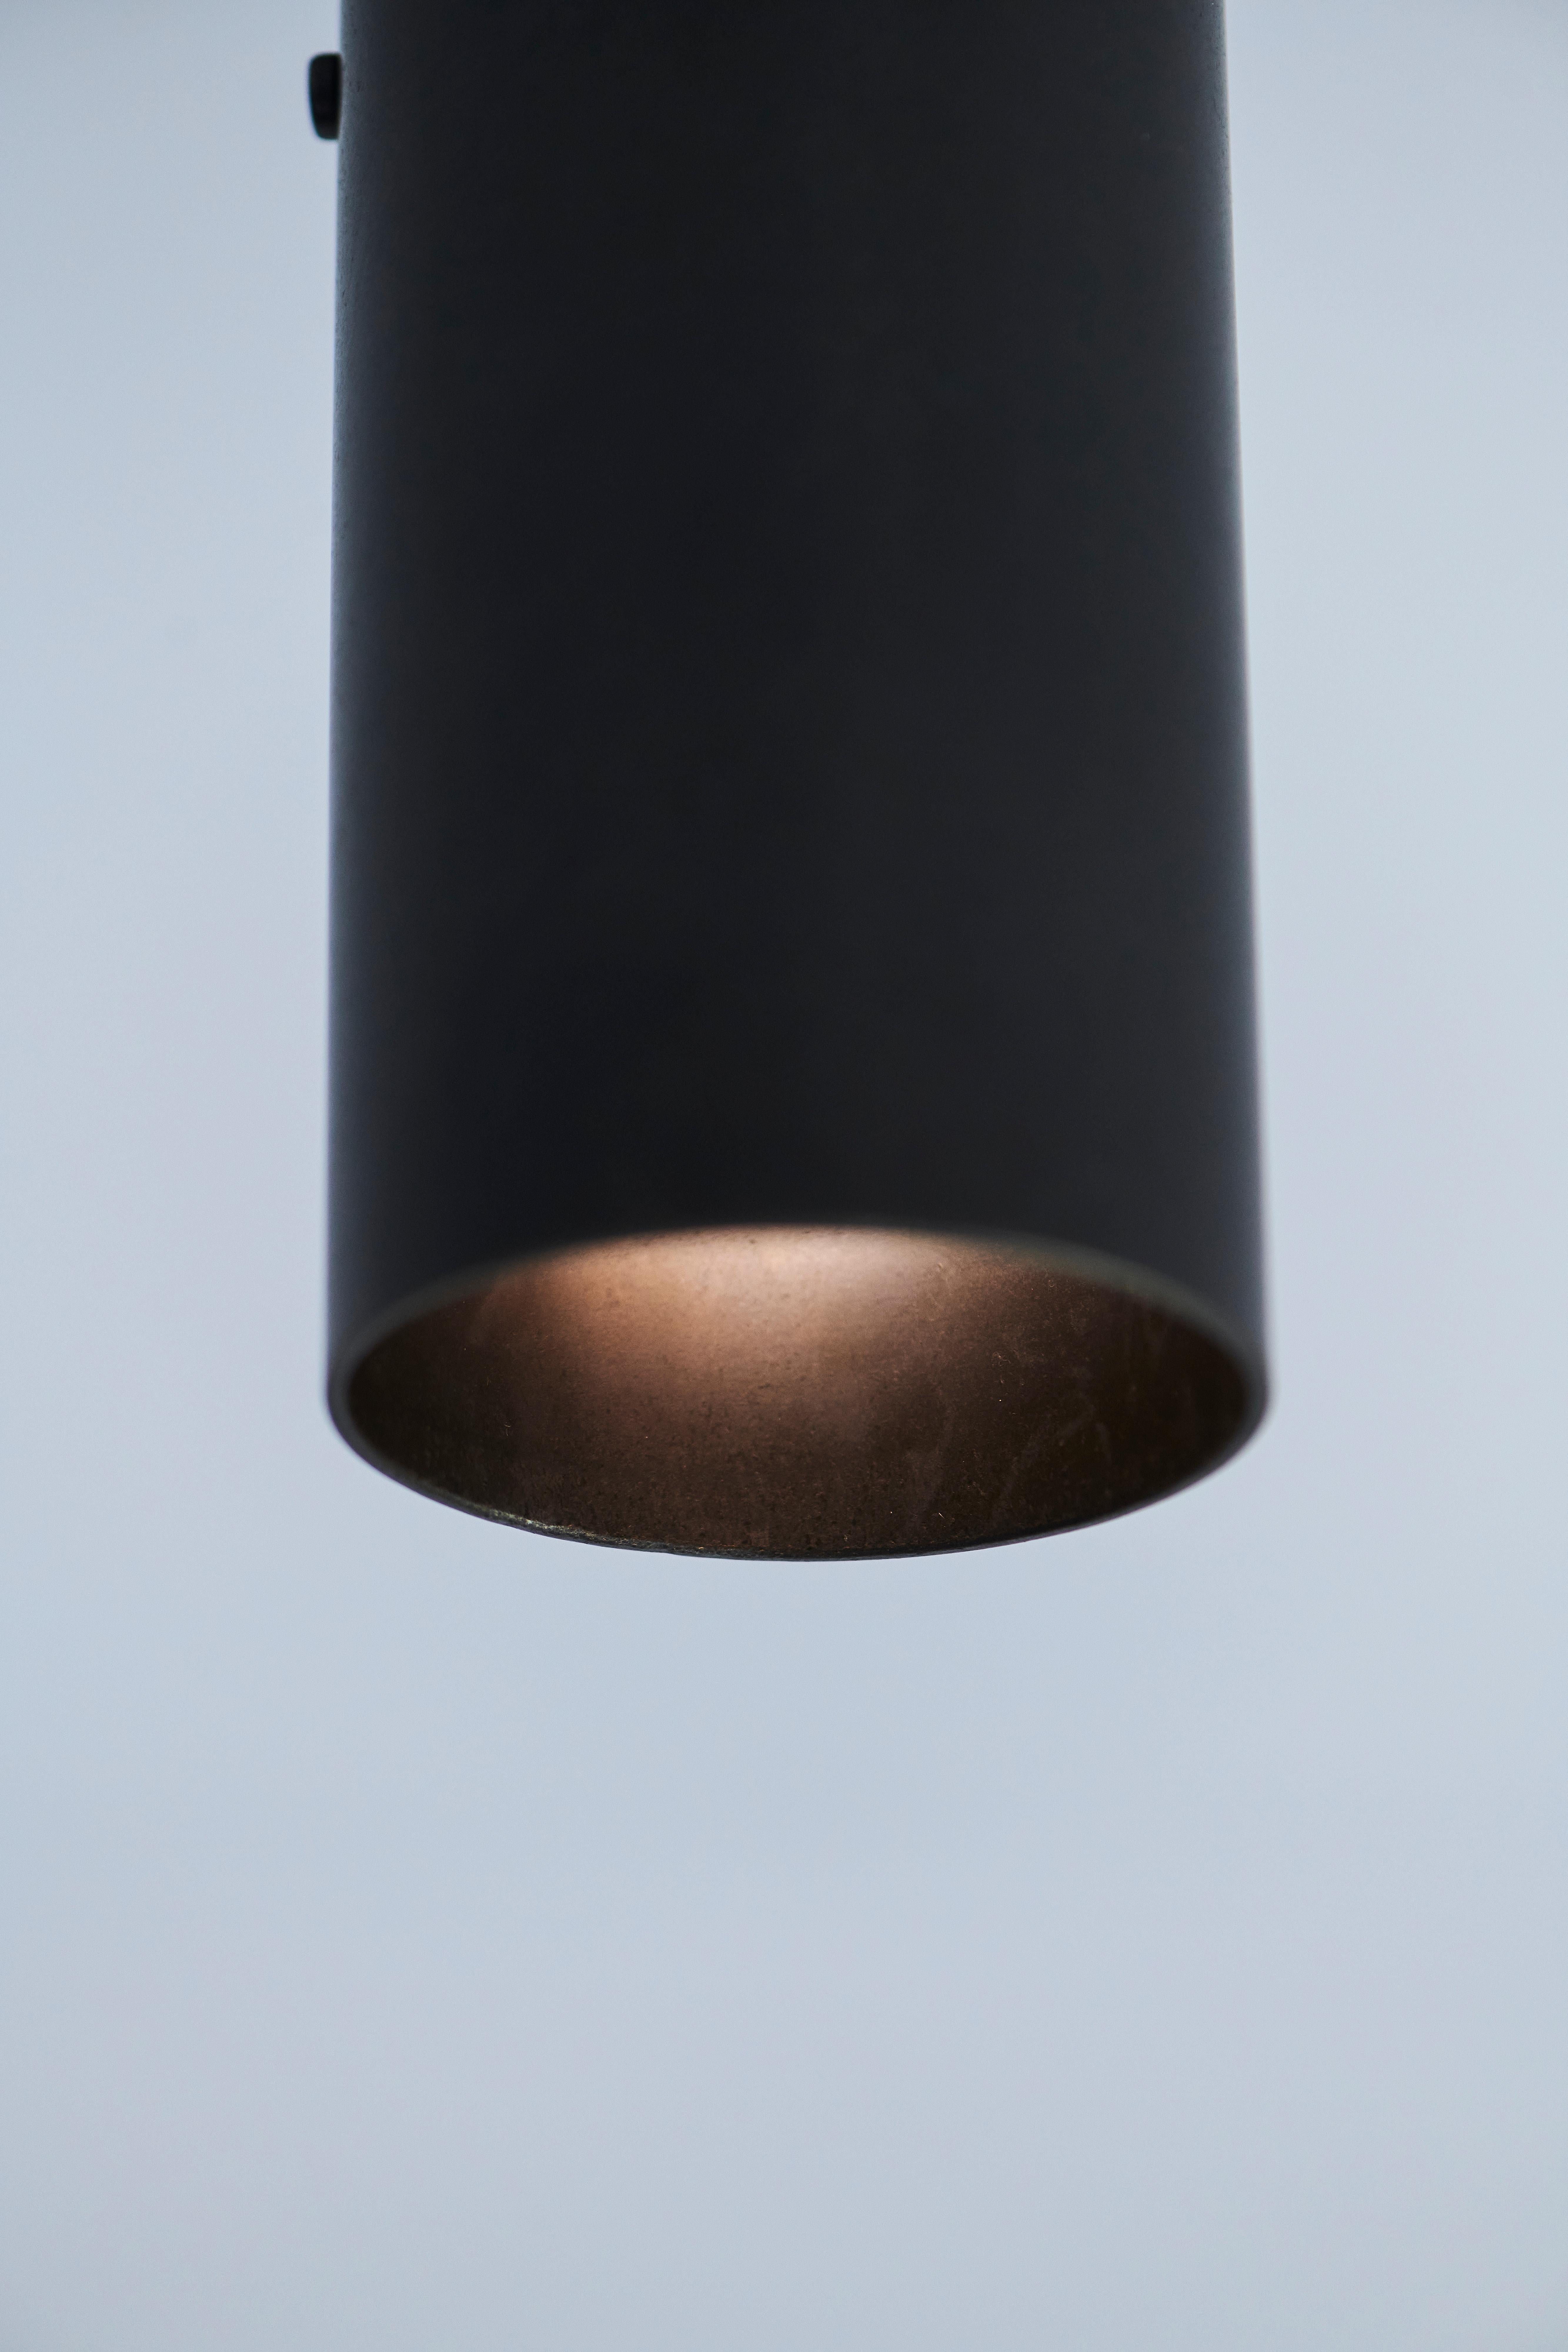 Fabriqué à la main en laiton massif en Australie par Dunlin. 

Un projecteur pivotant en laiton massif, très lourd. 
Un pivot à boule en laiton moulé permet à la lampe de tourner autour de sa tige. 

14,5 cm de long x 6,3 cm de diamètre
(5.7